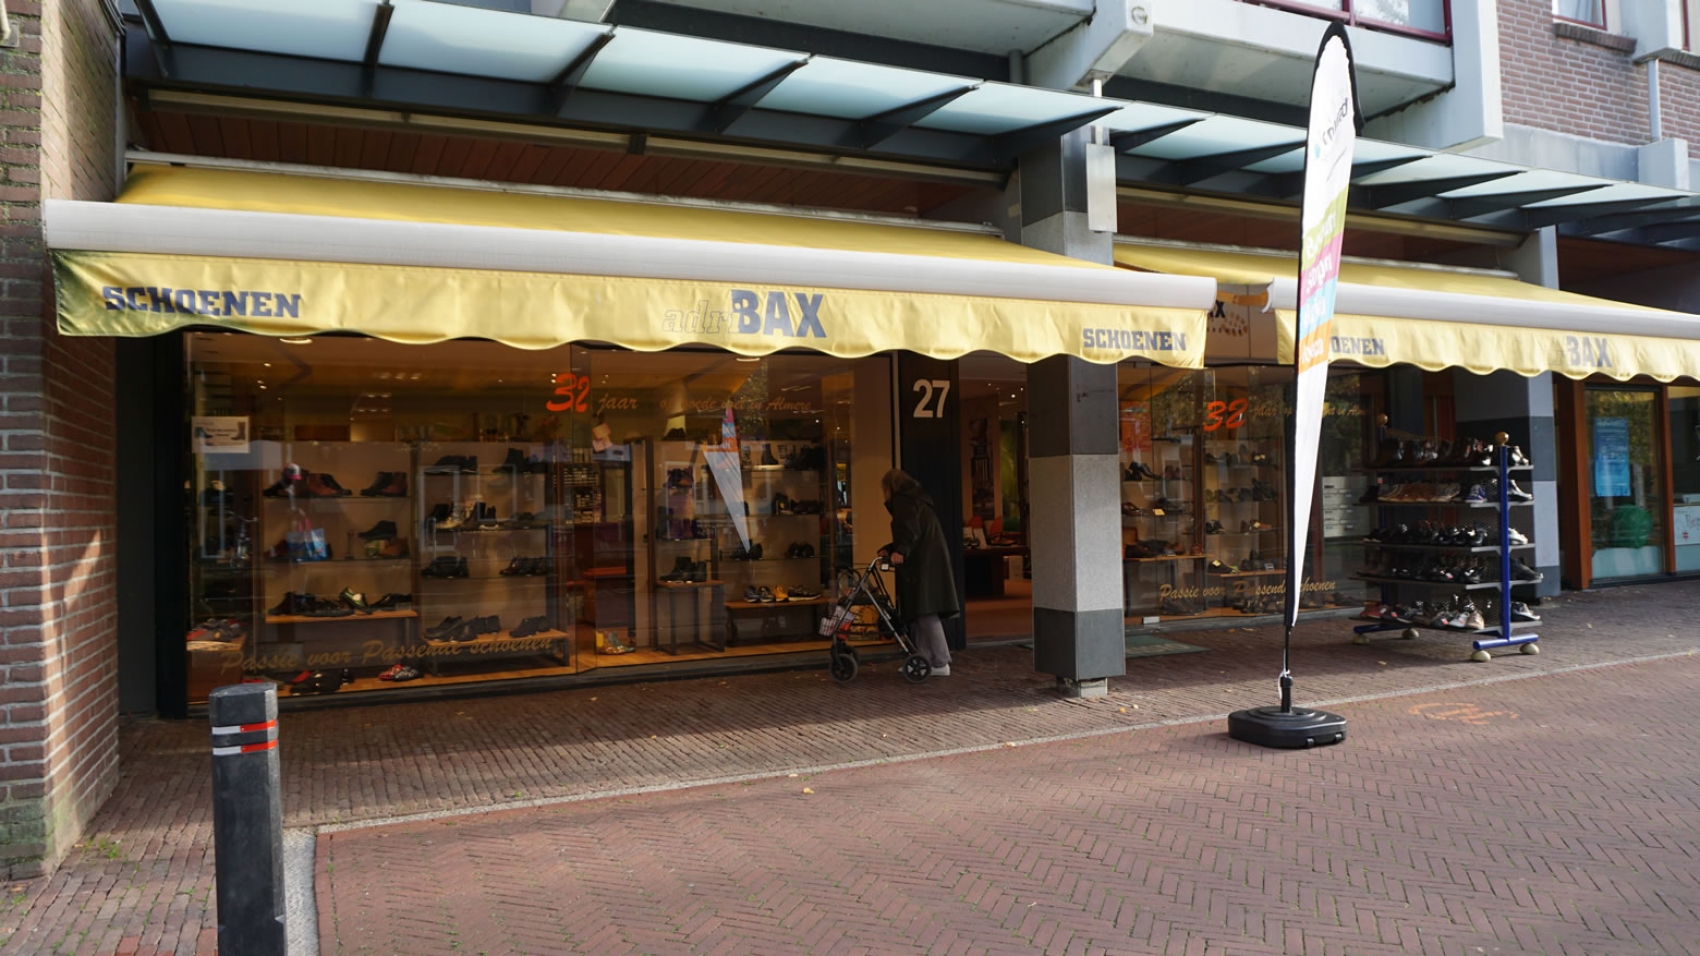 overzee Eigenlijk eten Adri Bax Schoenen - Promenade